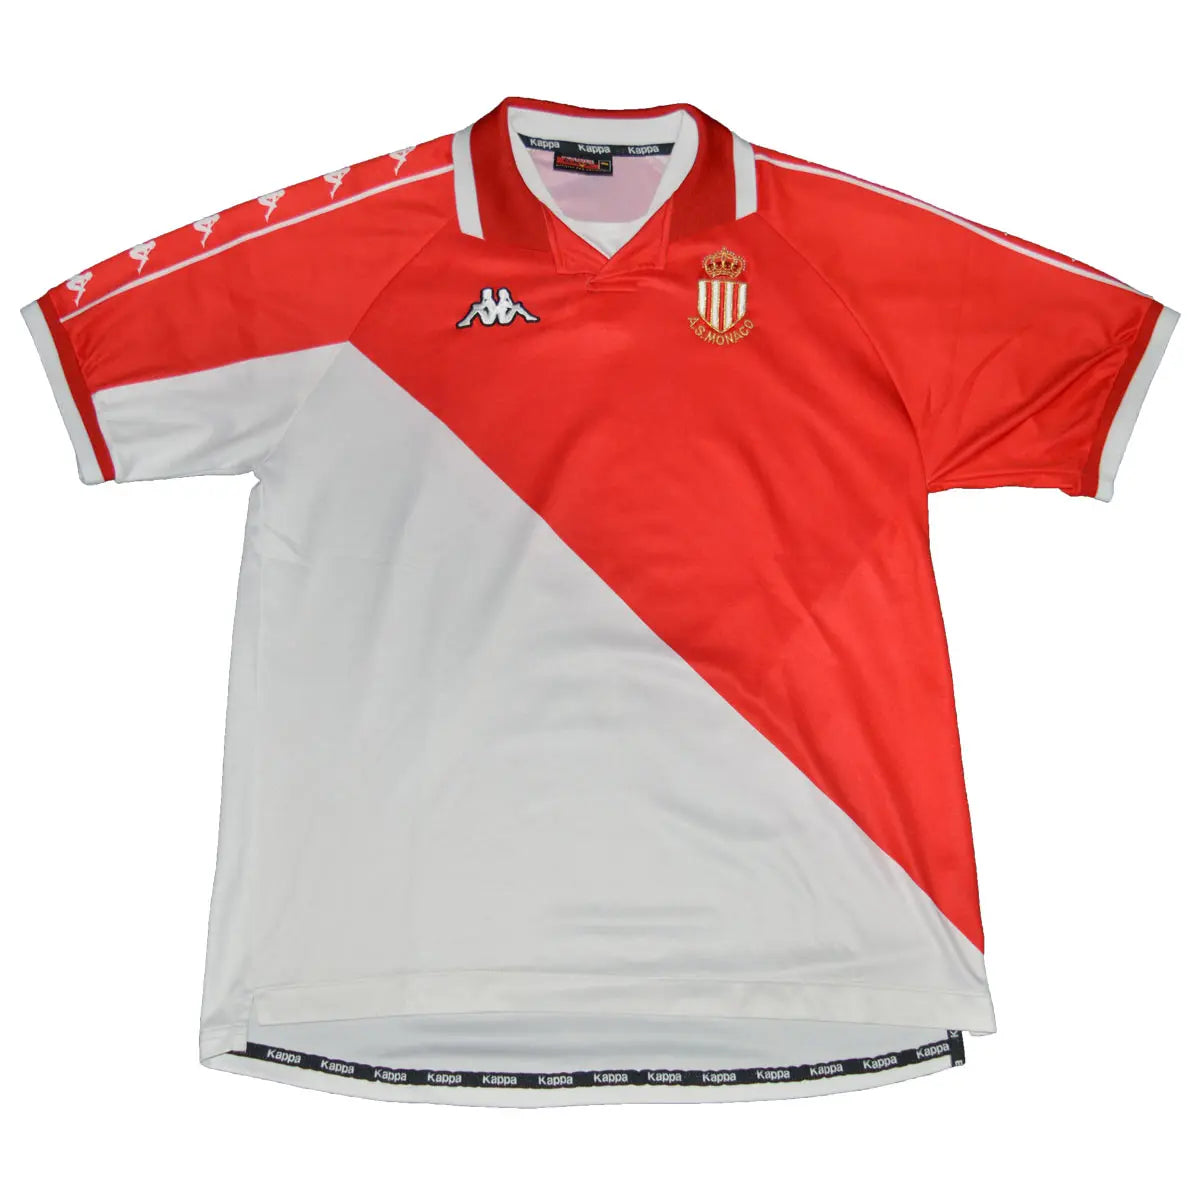 Maillot de foot rétro/vintage authentique rouge et blanc Kappa AS Monaco domicile 2000-2001